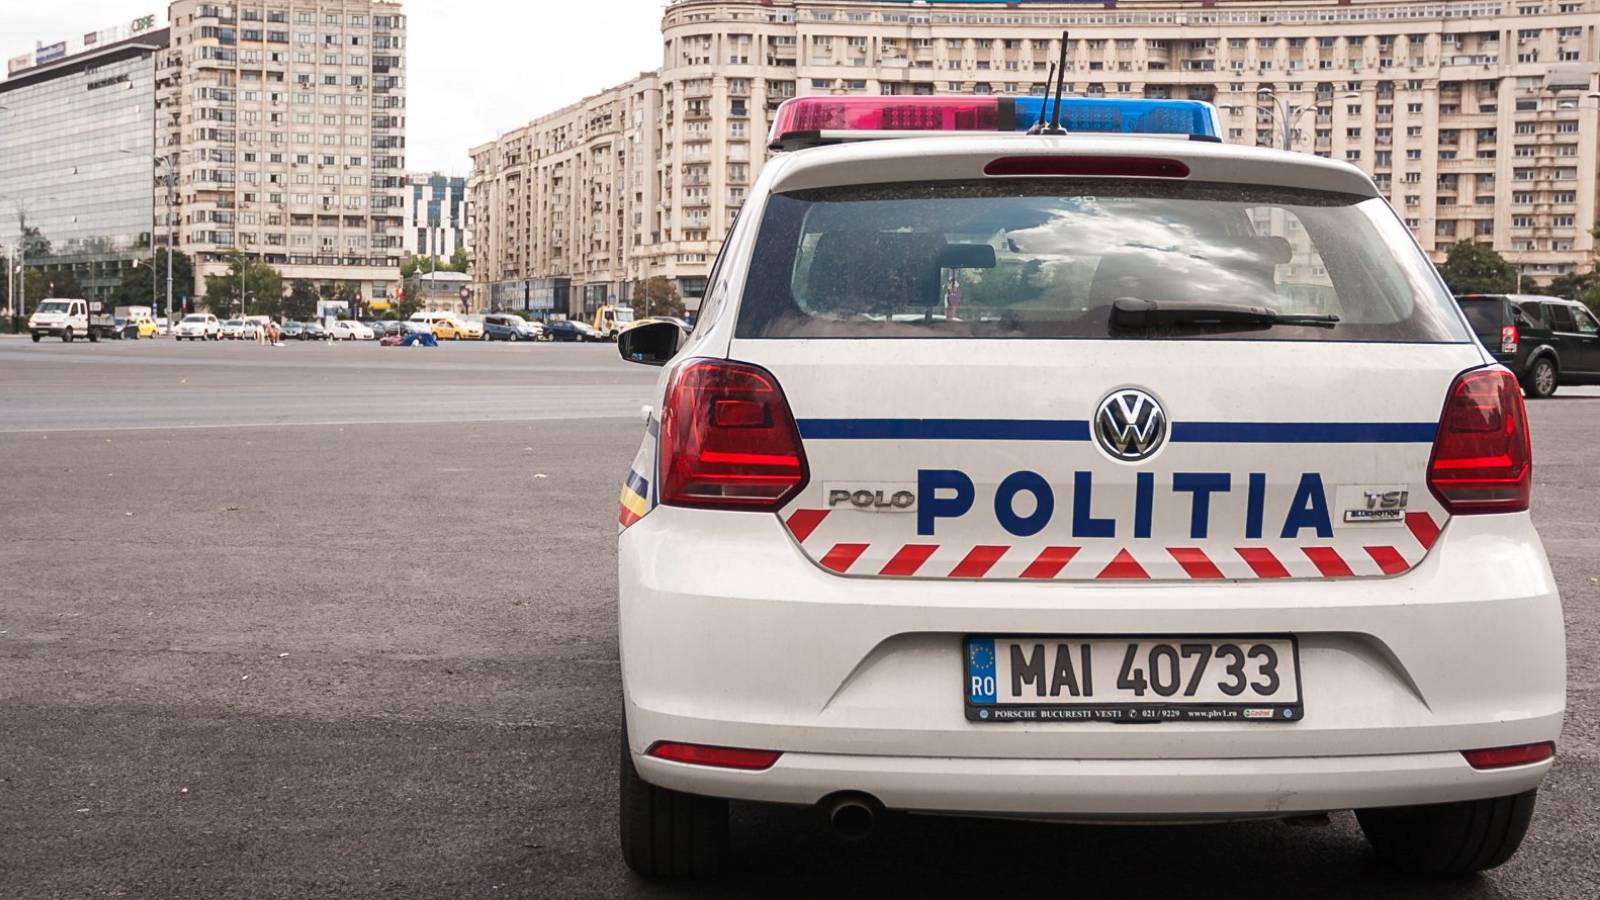 Aufmerksamkeit der rumänischen Polizei auf Elektroroller